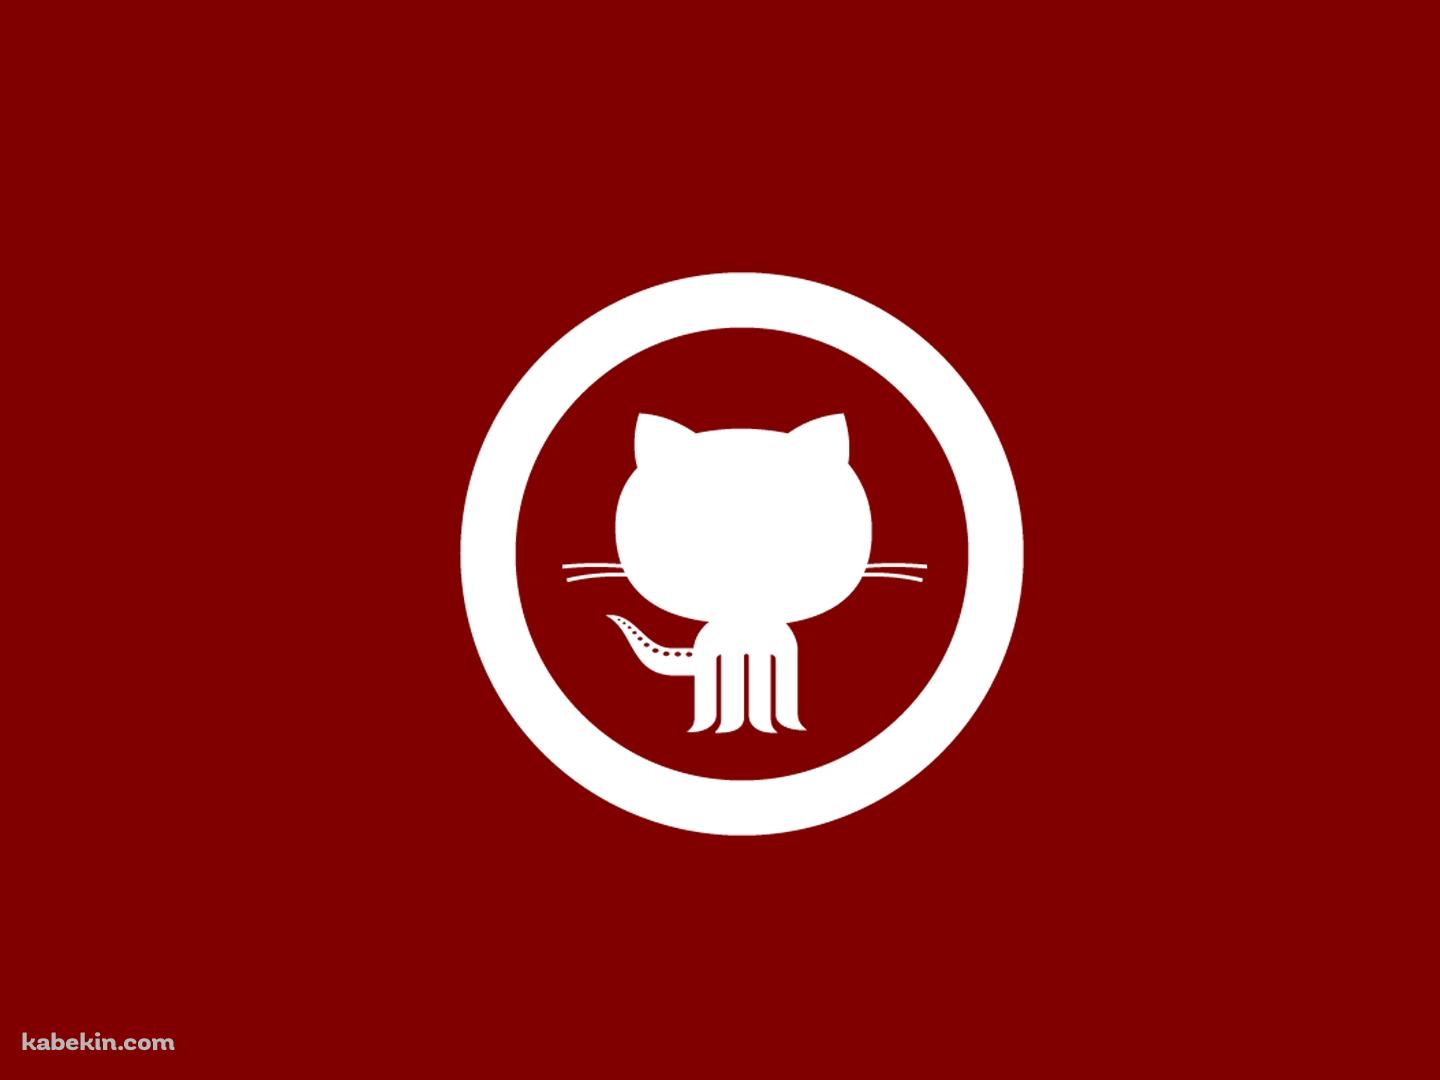 GitHub(赤)のロゴの壁紙(1440px x 1080px) 高画質 PC・デスクトップ用